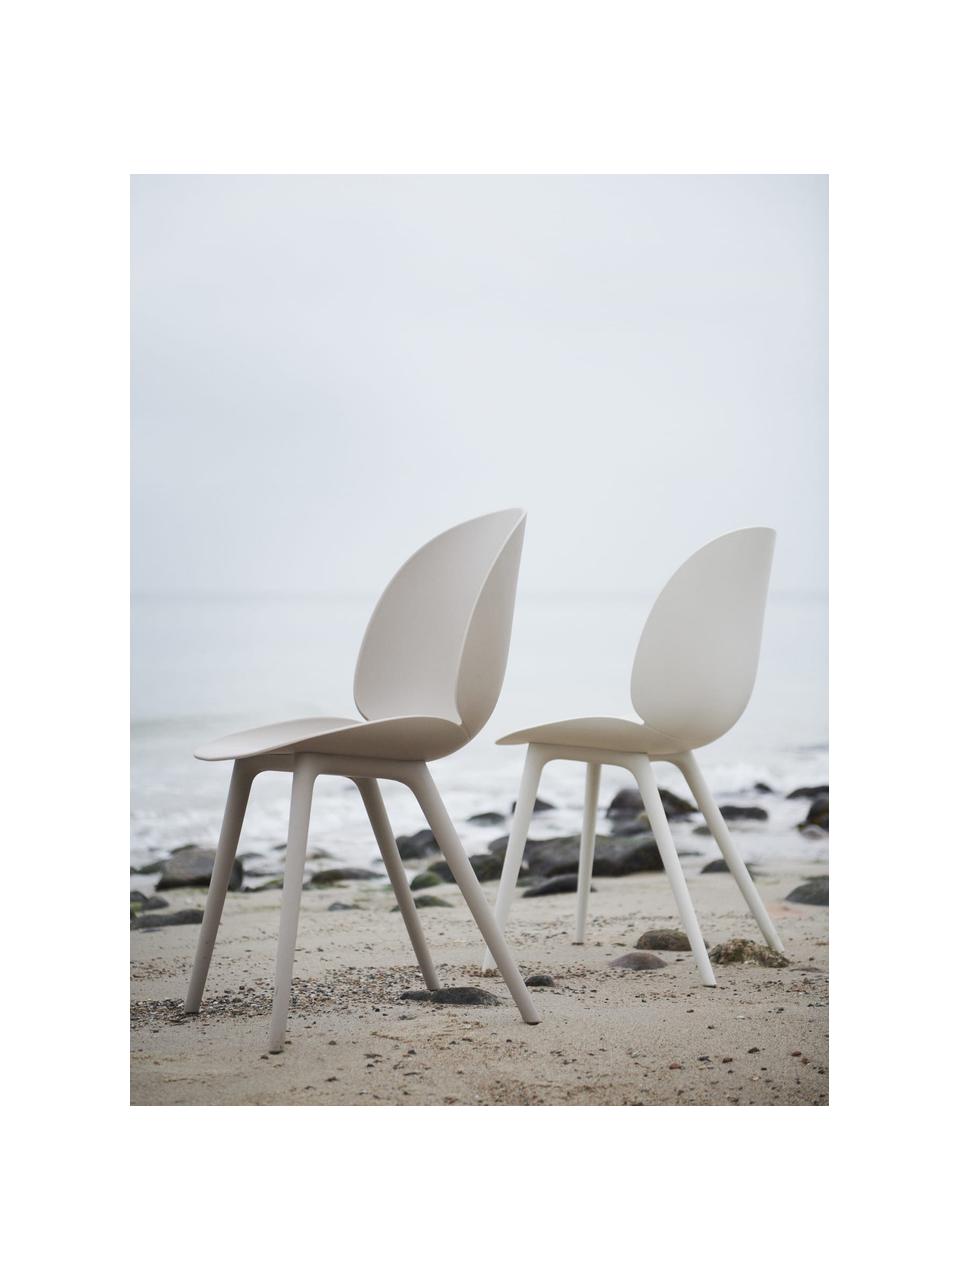 Krzesło ogrodowe Beetle, Tworzywo sztuczne odporne na warunki atmosferyczne, Jasny beżowy, matowy, S 56 x G 58 cm